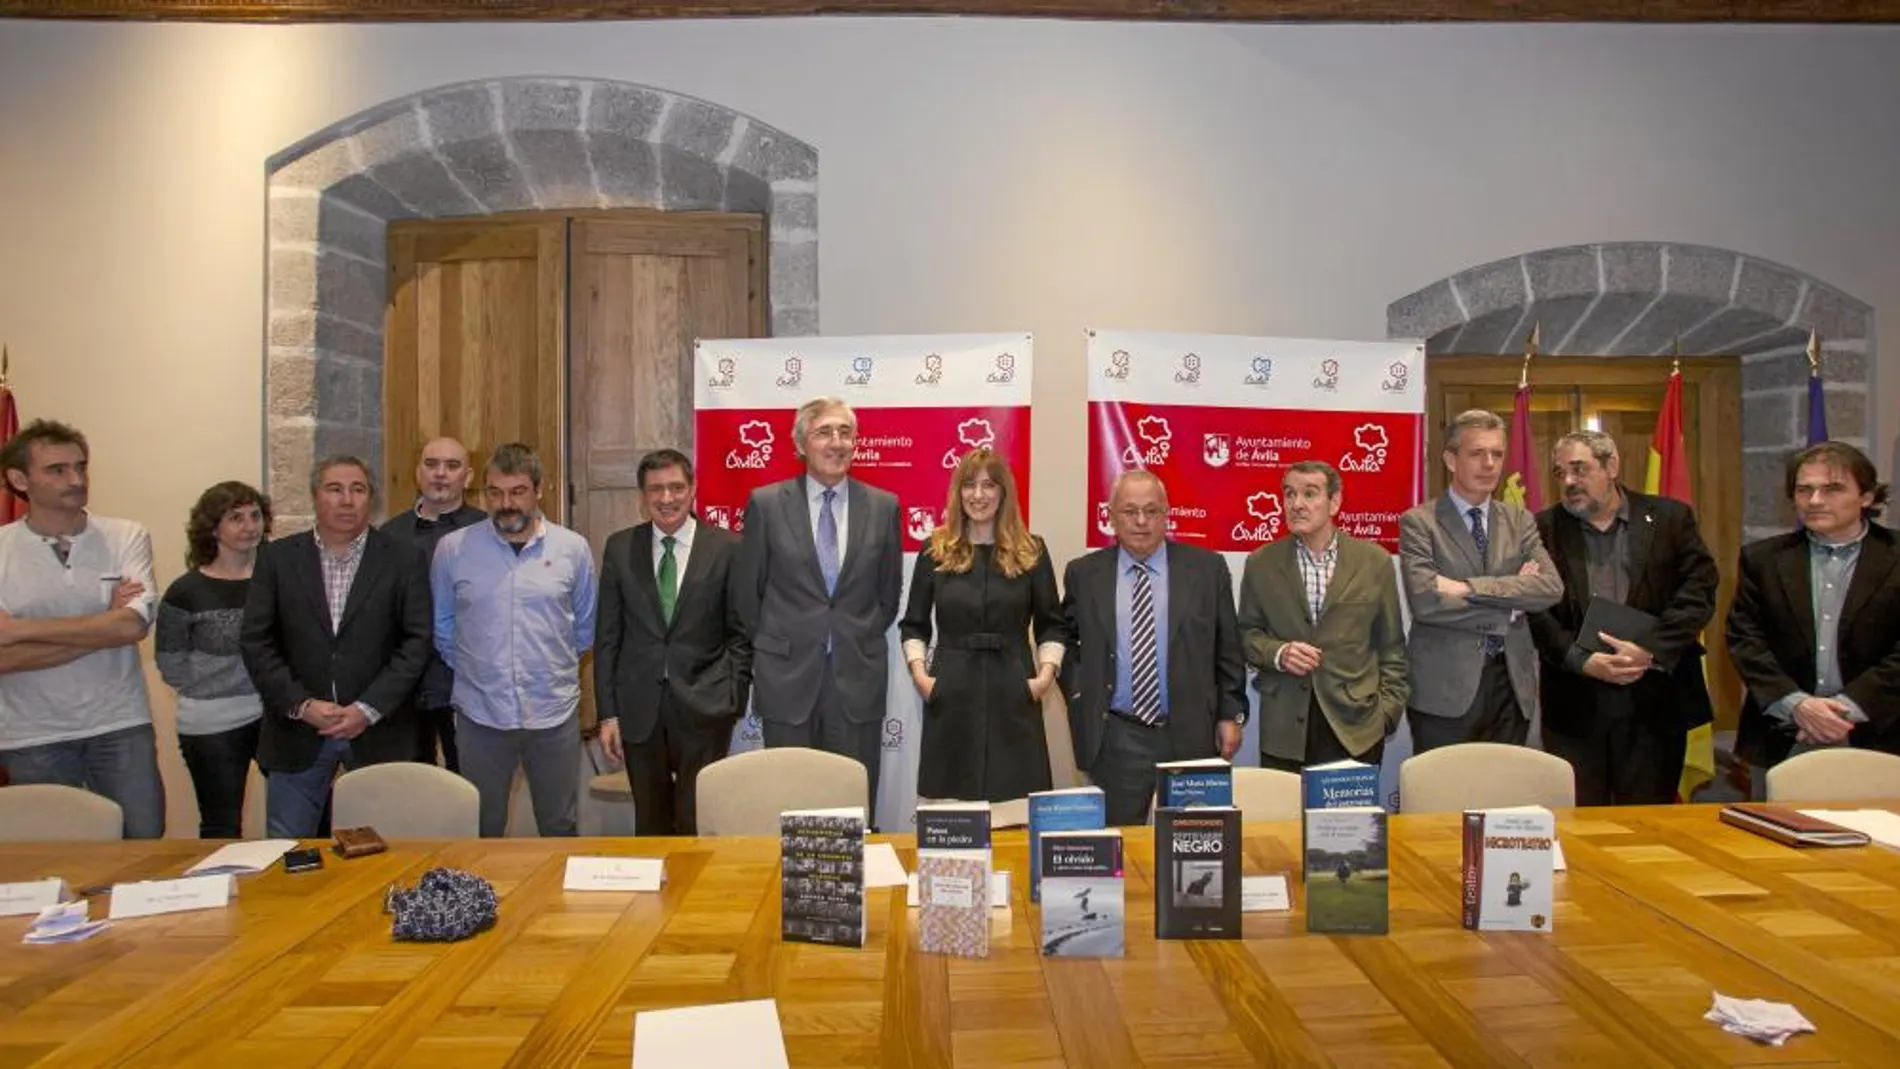 El alcalde de Ávila, José Luis Rivas; la directora de Políticas Culturales, Mar Sancho; y los miembros del jurado